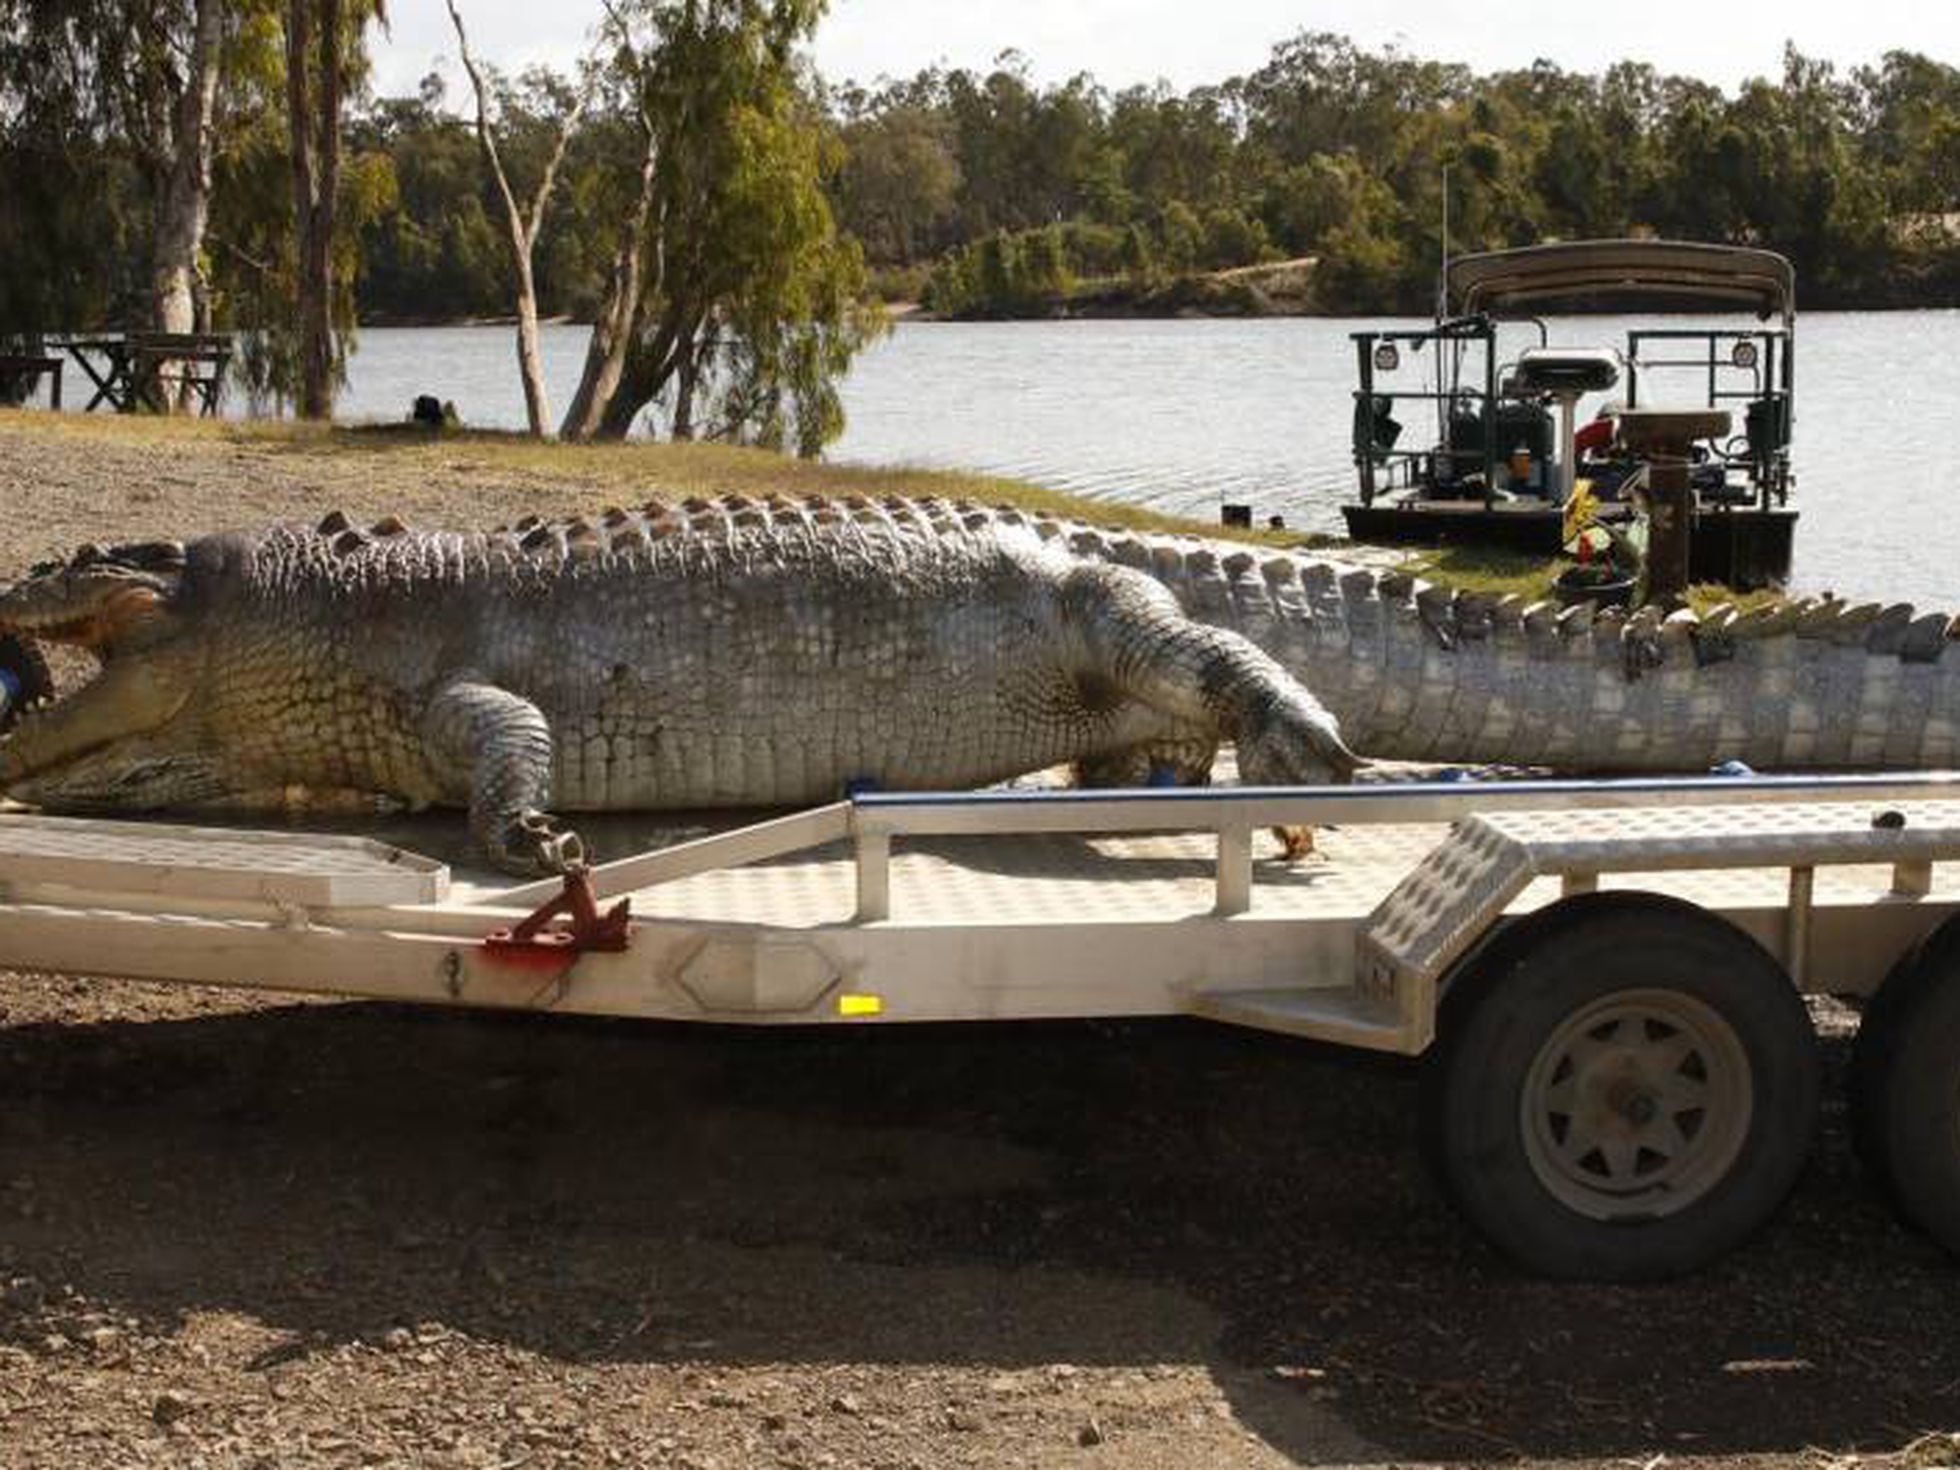 La muerte de un cocodrilo gigante abre la 'guerra sucesoria' en el Fitzroy  | Mundo animal | EL PAÍS